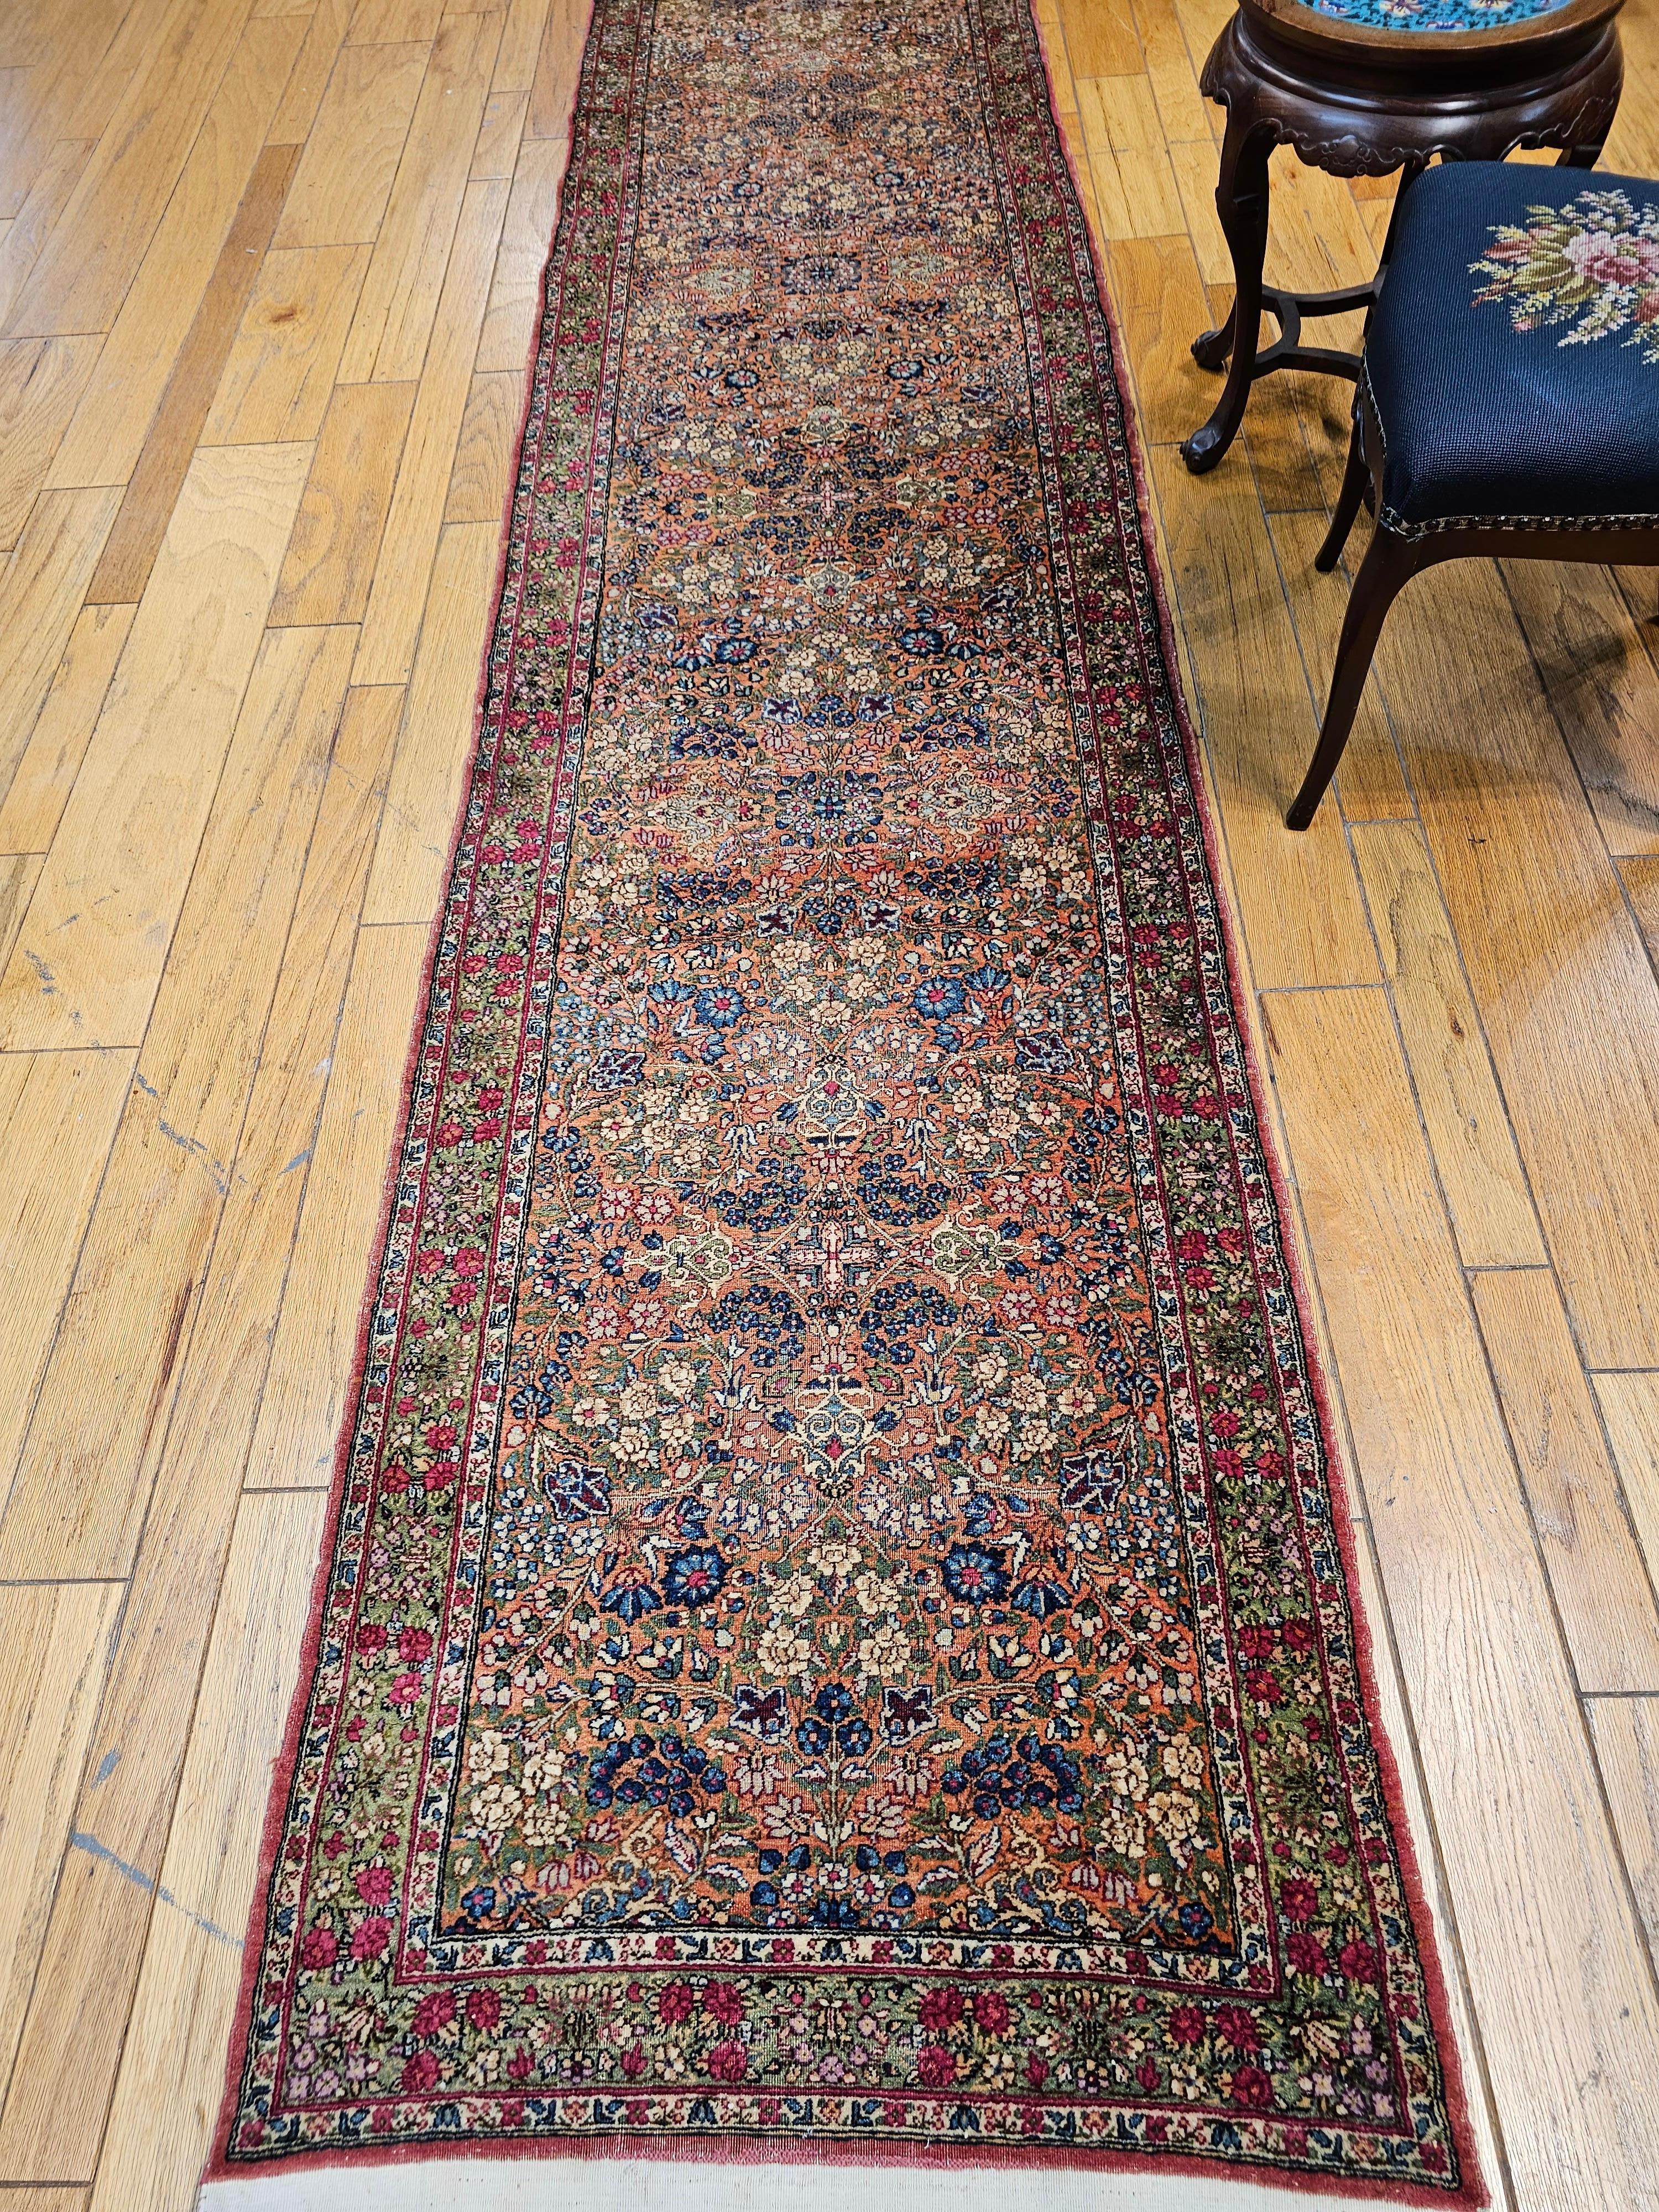 Rare tapis de course persan Kerman du 19e siècle à motif floral, champ rouge rouille et bordures vertes.  Le tapis Lavar Kerman est rarement présenté sous forme de chemin de table, ce qui le rend encore plus désirable. L'autre aspect unique de ce